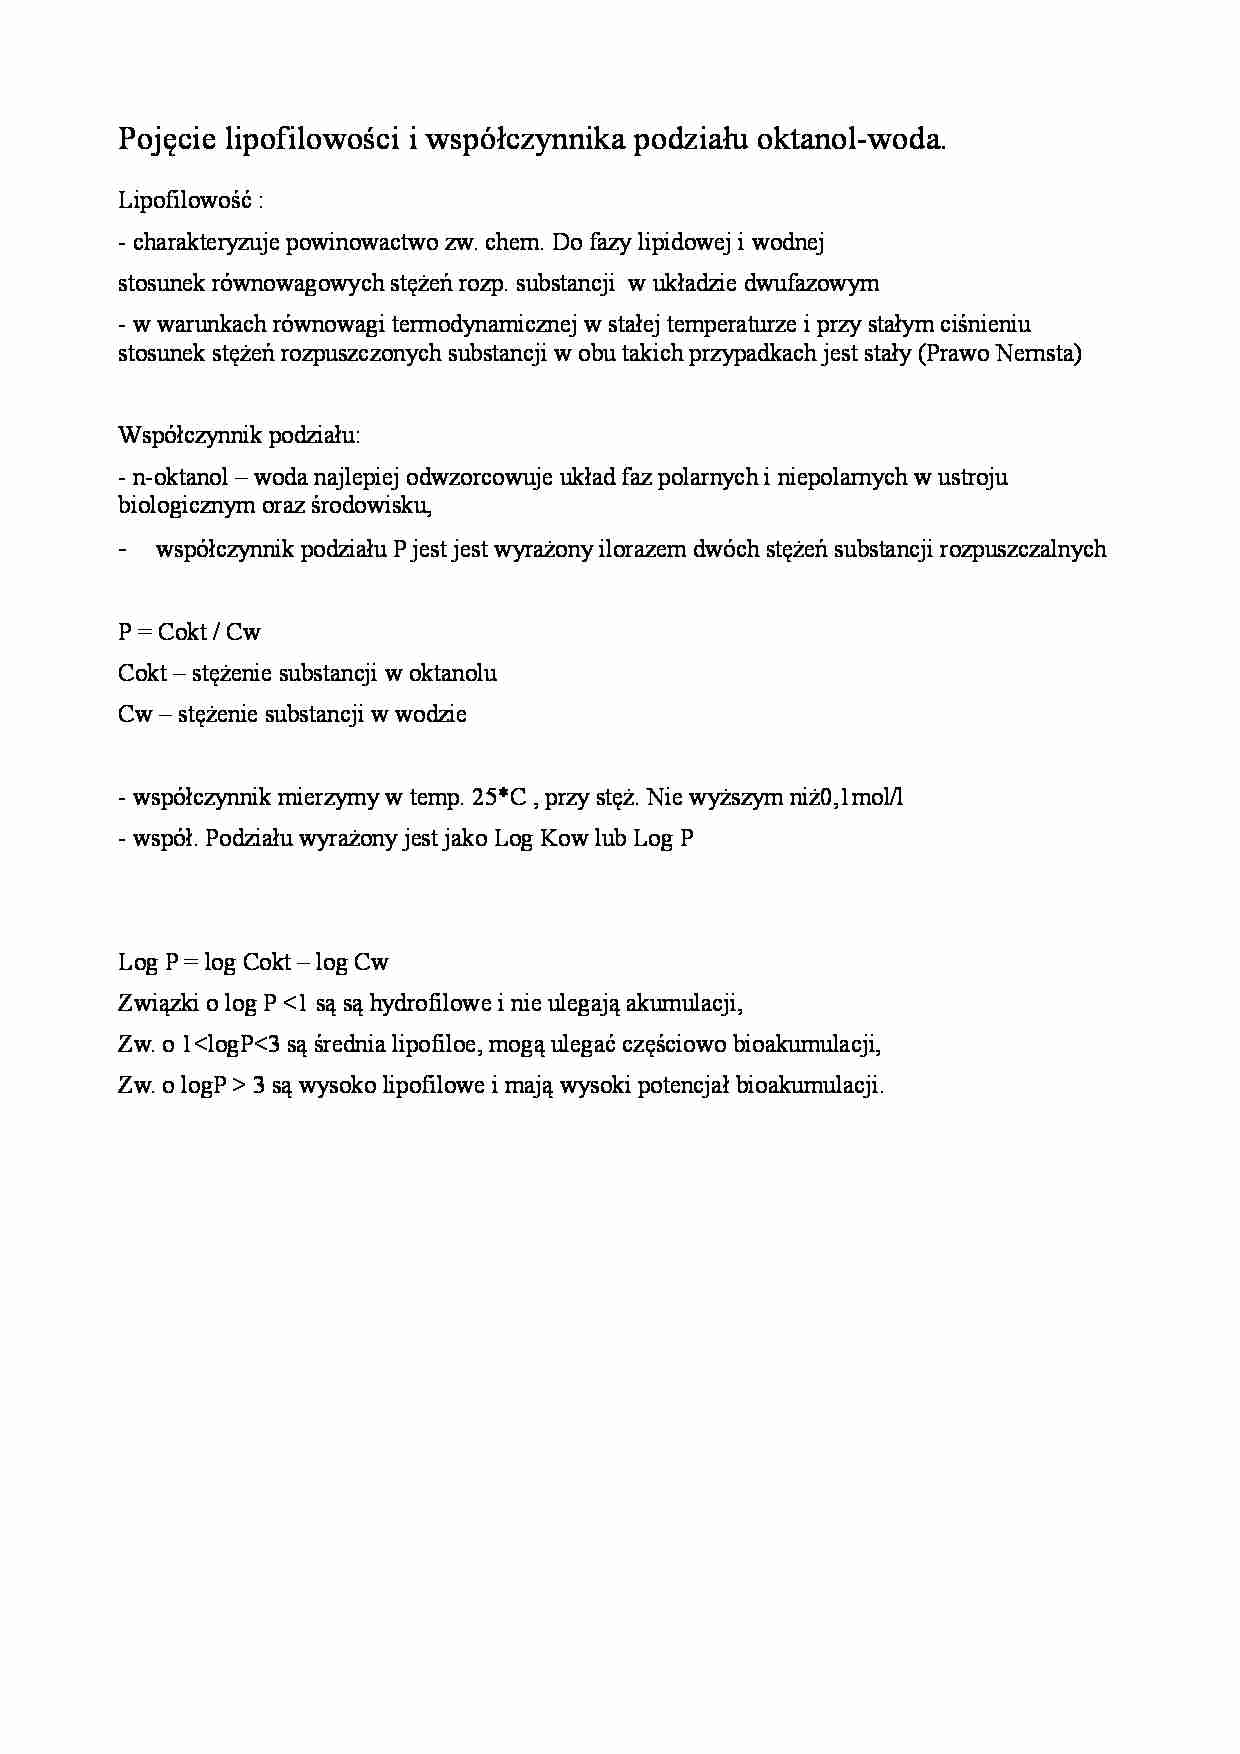 Pojęcie lipofilowości i współczynnika podziału oktanol-woda - strona 1